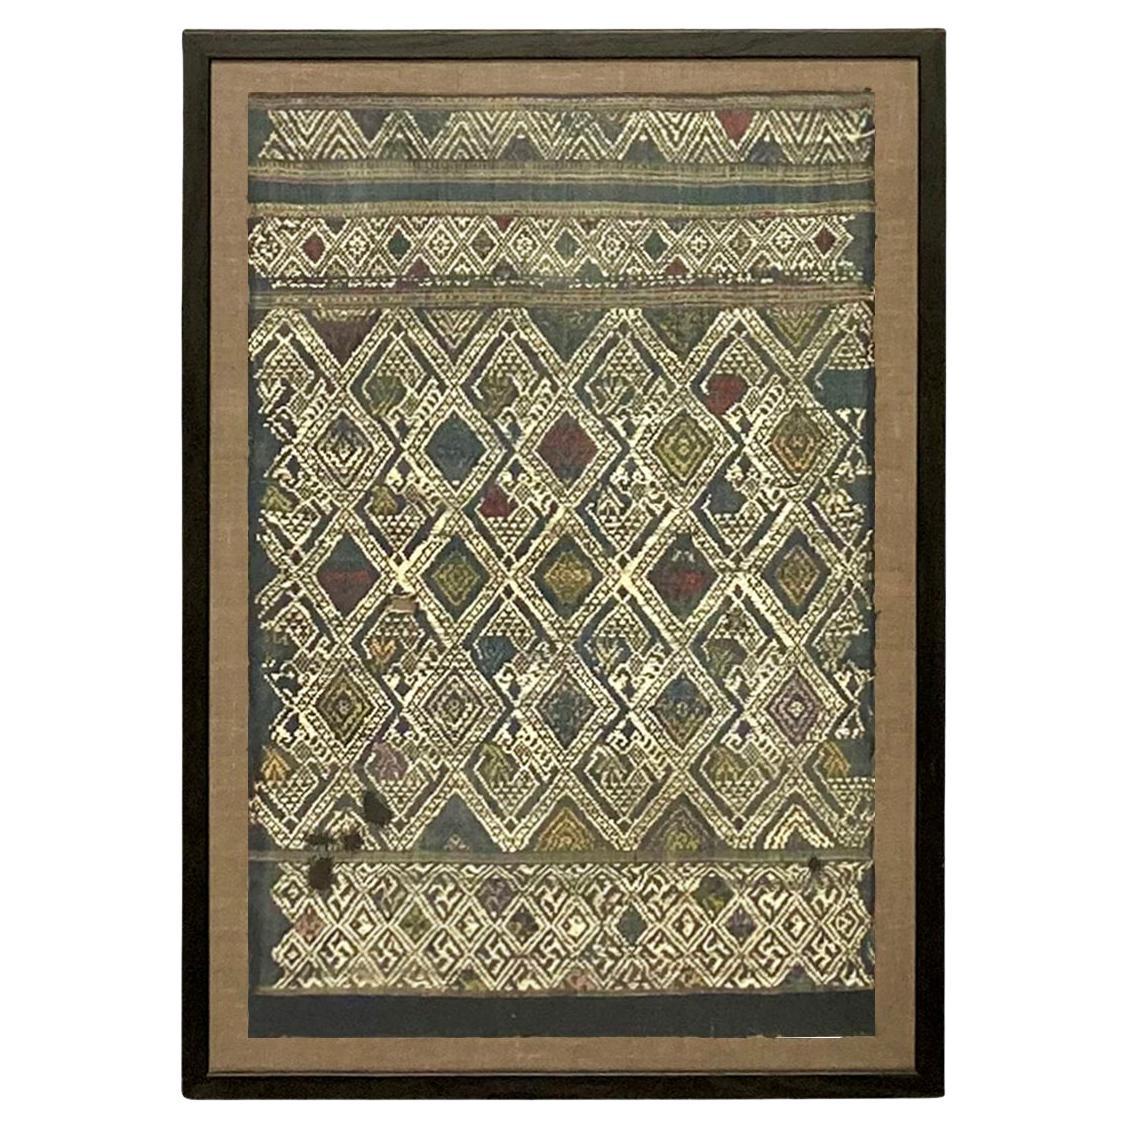 Framed Antique Guiqzou Province Textile